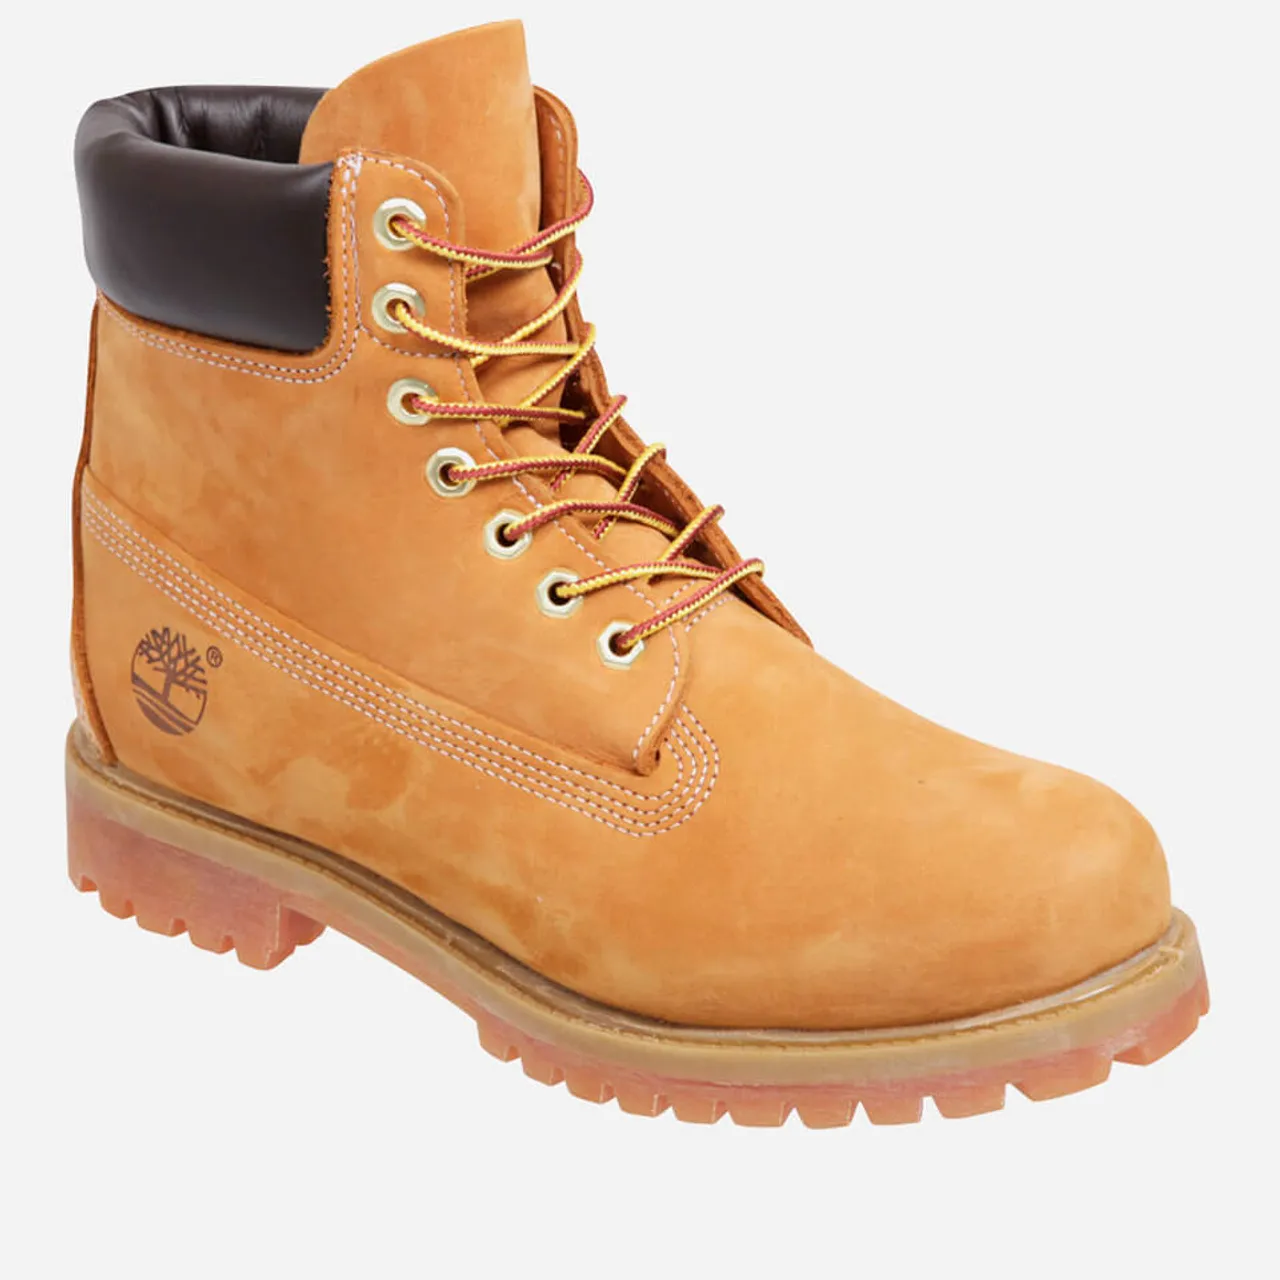 Timberland Men's 6 Inch Premium Waterproof Boots - Wheat - UK